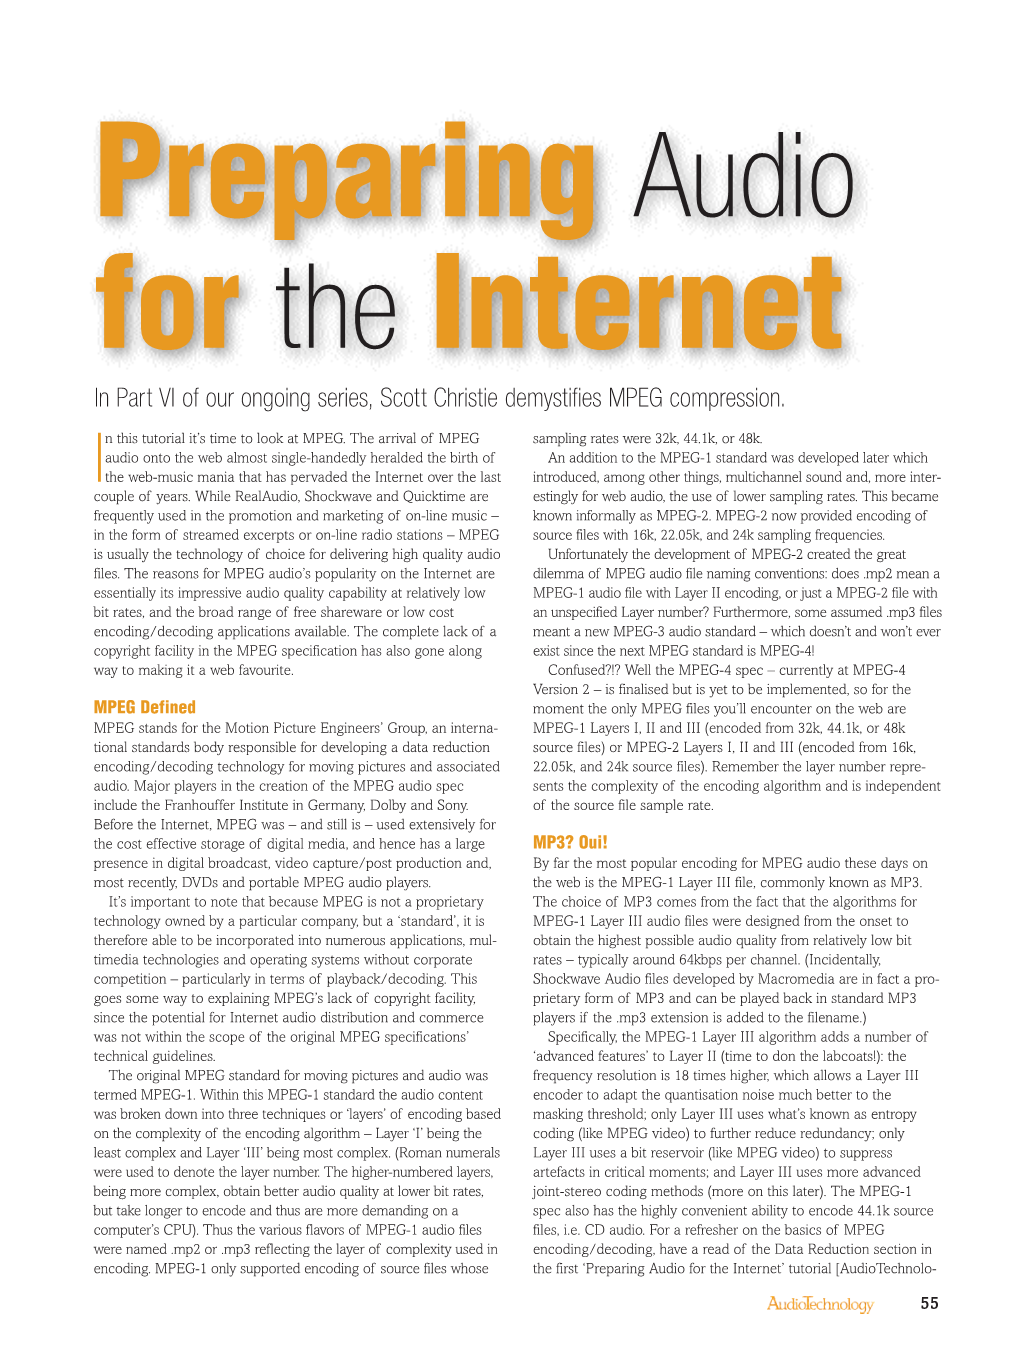 Preparing Audio for the Internet Part 6